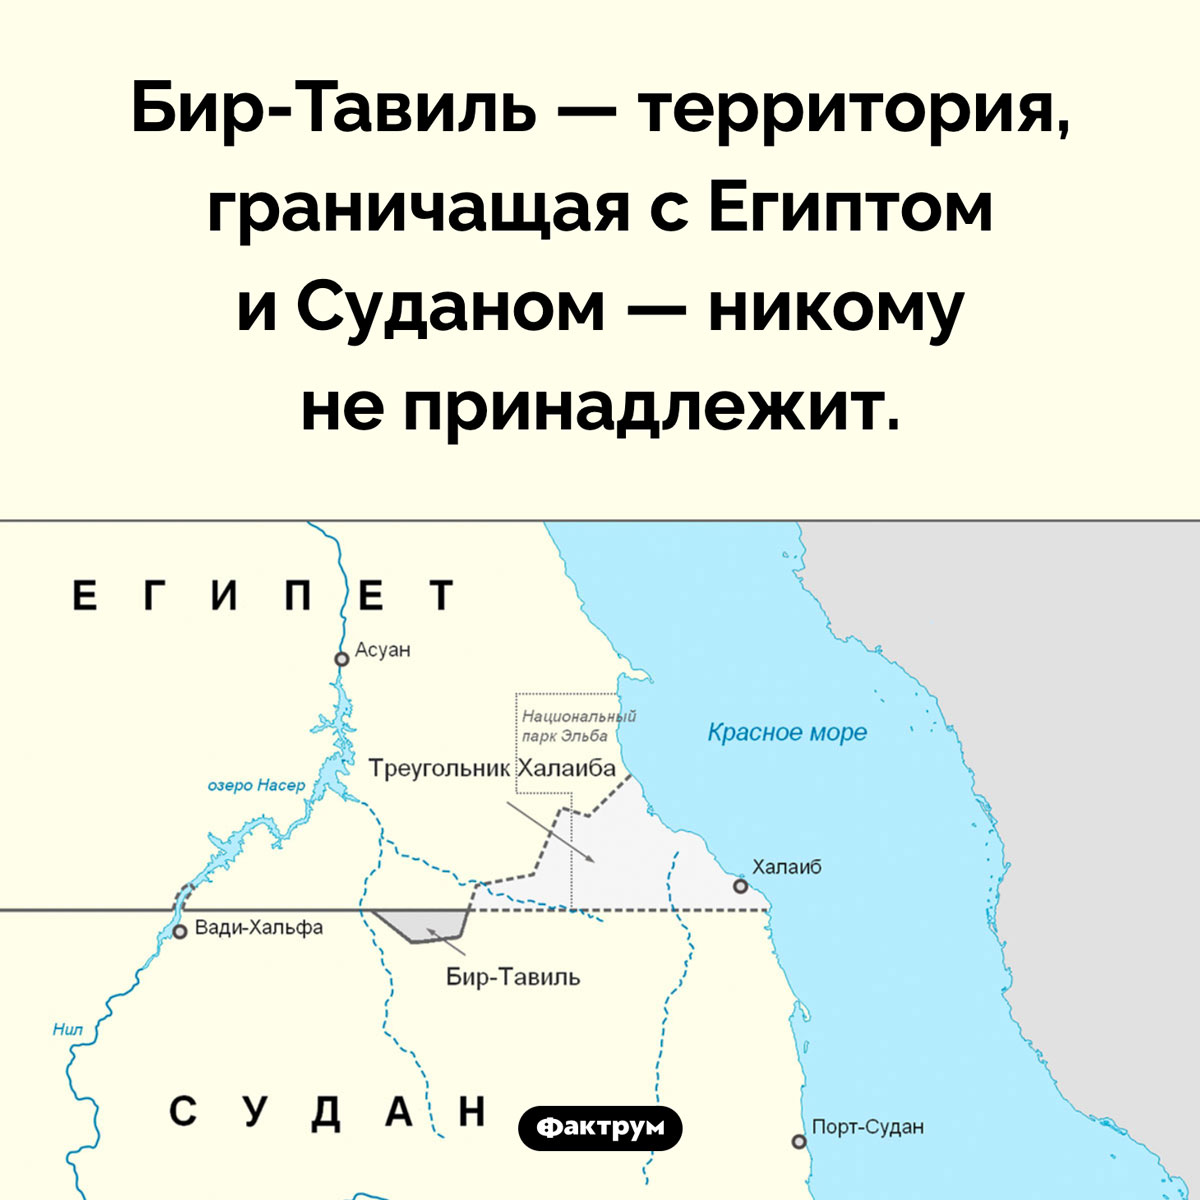 Бир-Тавиль — ничейная территория. Бир-Тавиль — территория, граничащая с Египтом и Суданом — никому не принадлежит.